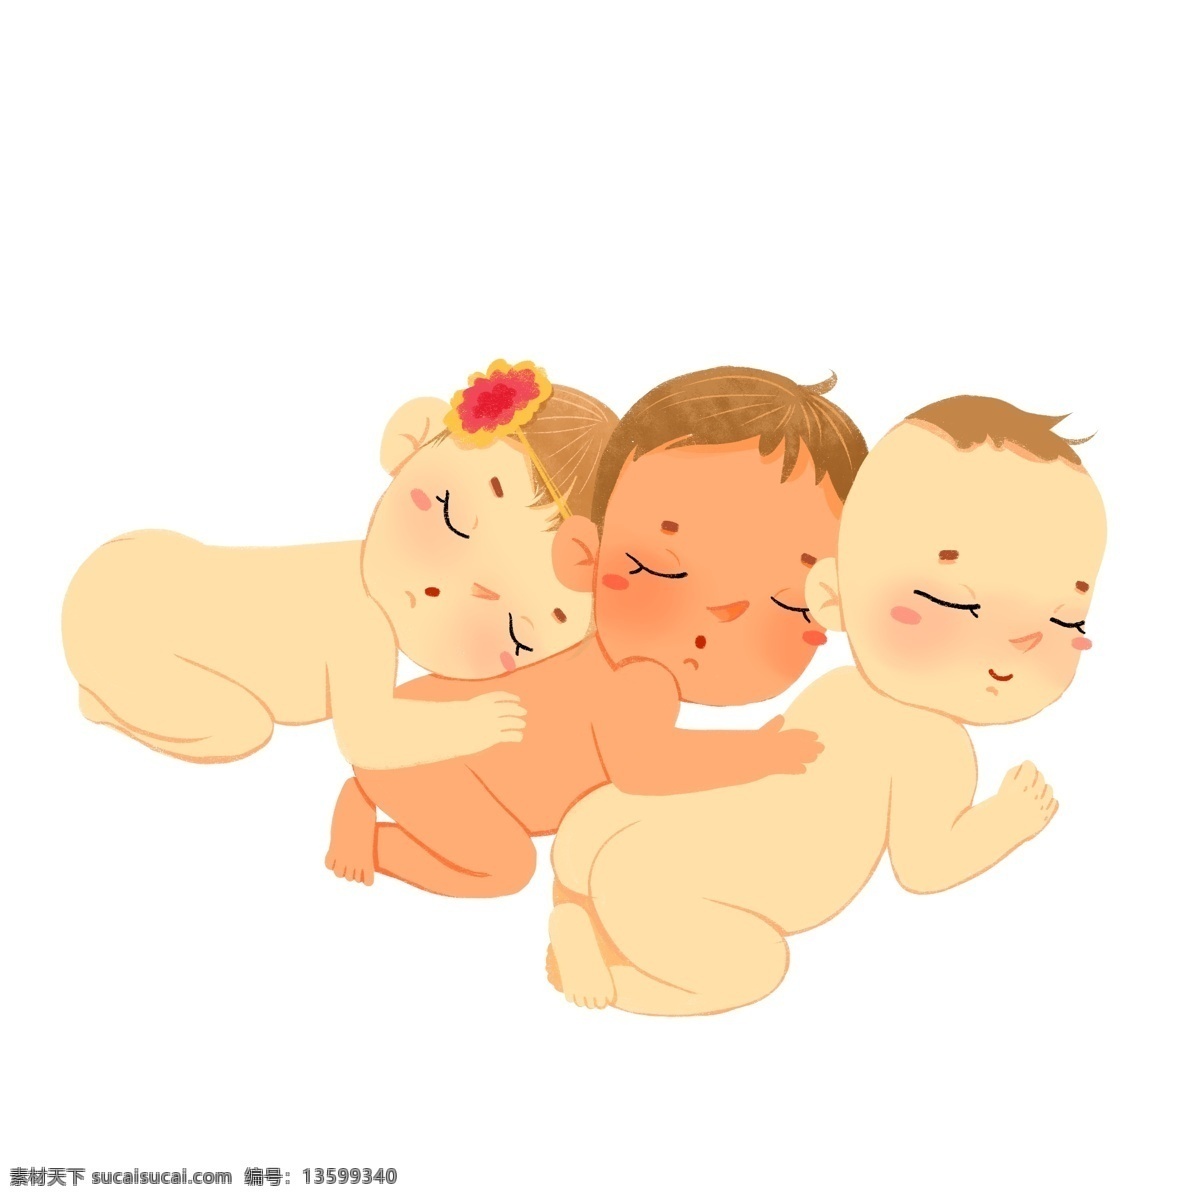 正在 睡觉 三个 小朋友 婴儿 baby 倚靠 可爱 卡通 人物 小屁股 多人 三个小孩 有爱 依偎 童趣 新生儿